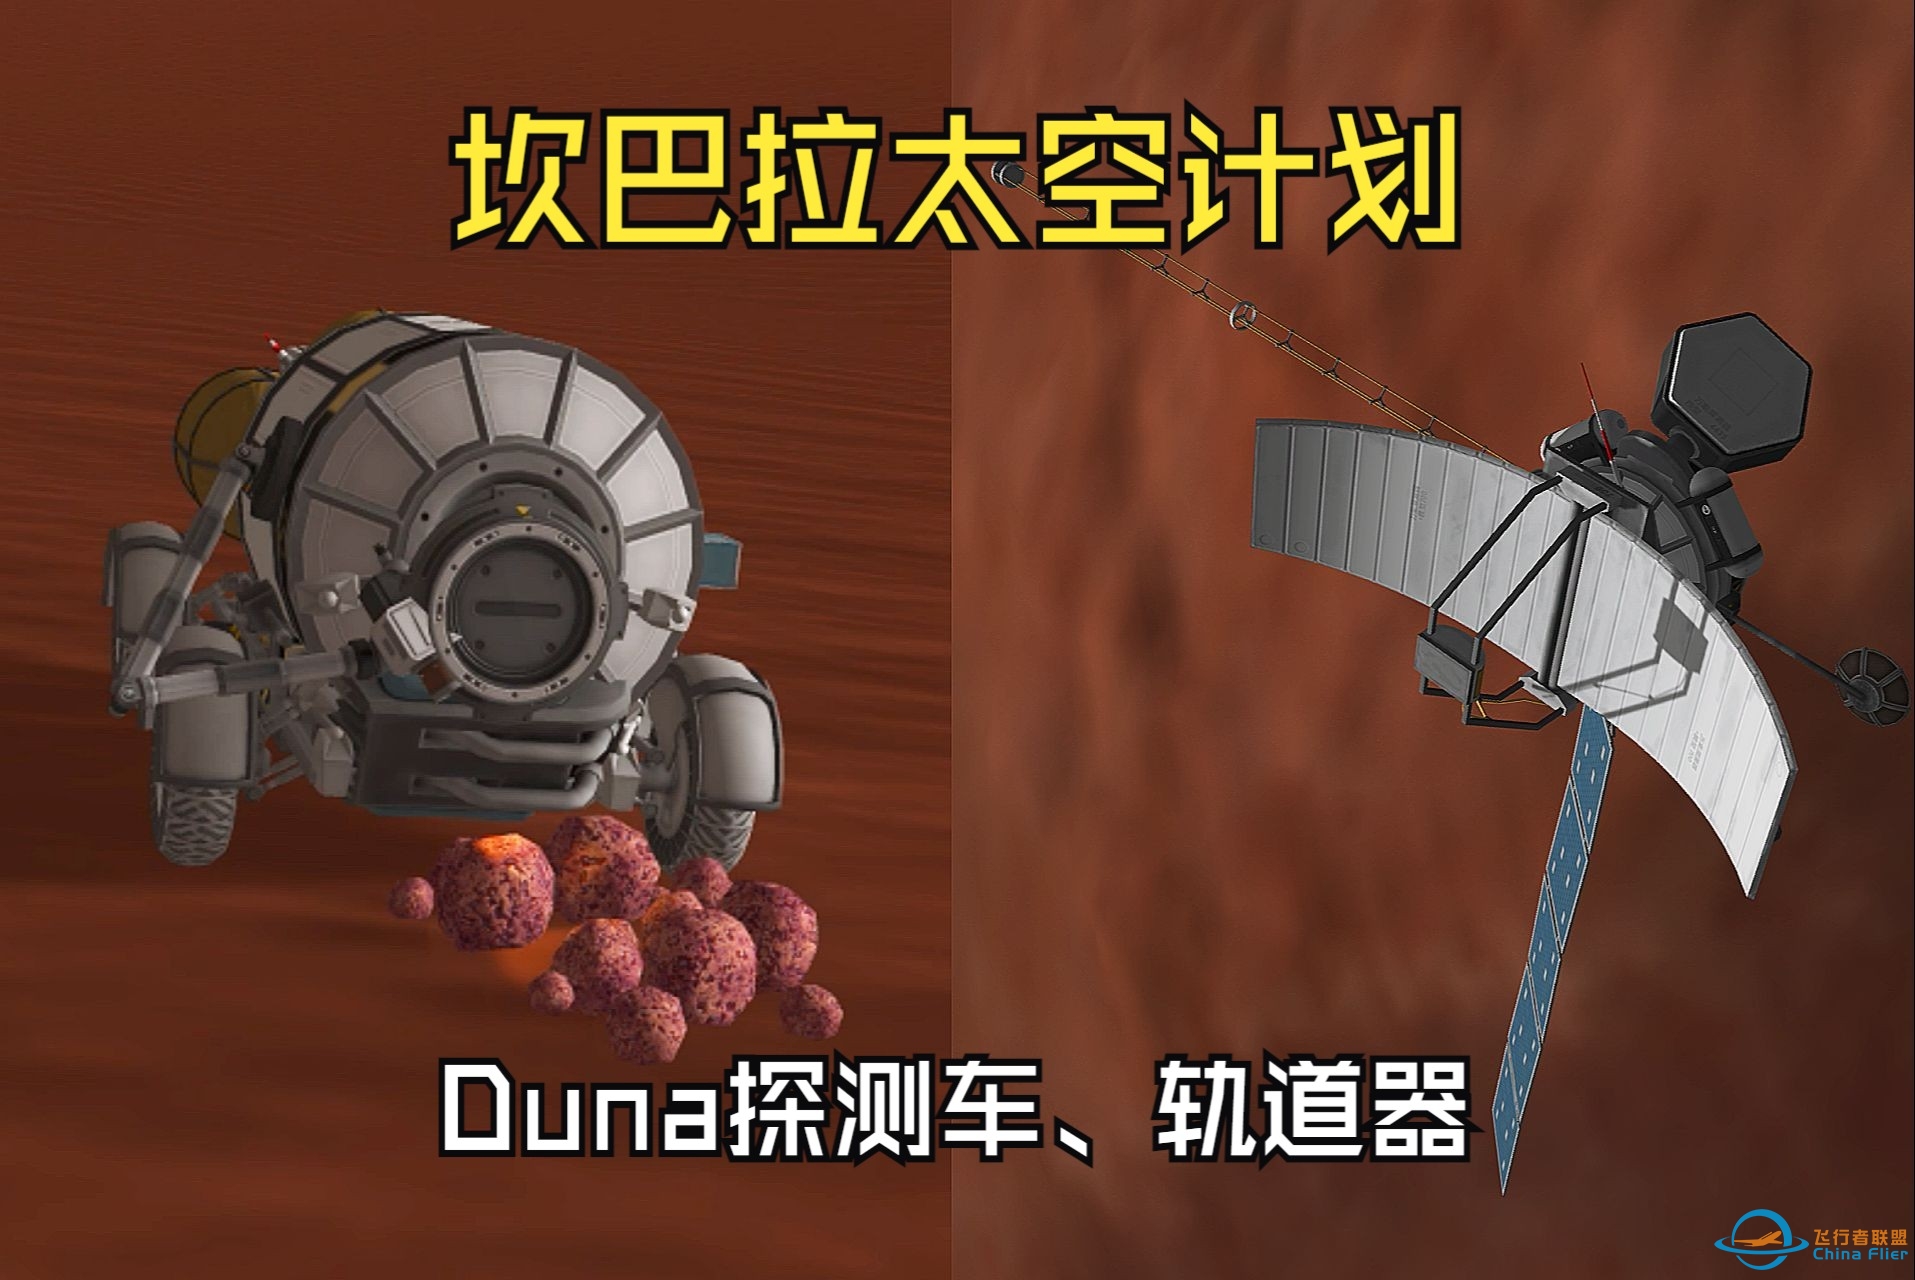 【坎巴拉太空计划】Duna探测车、资源探测卫星及科学数据返回 新手教学第2期-5533 